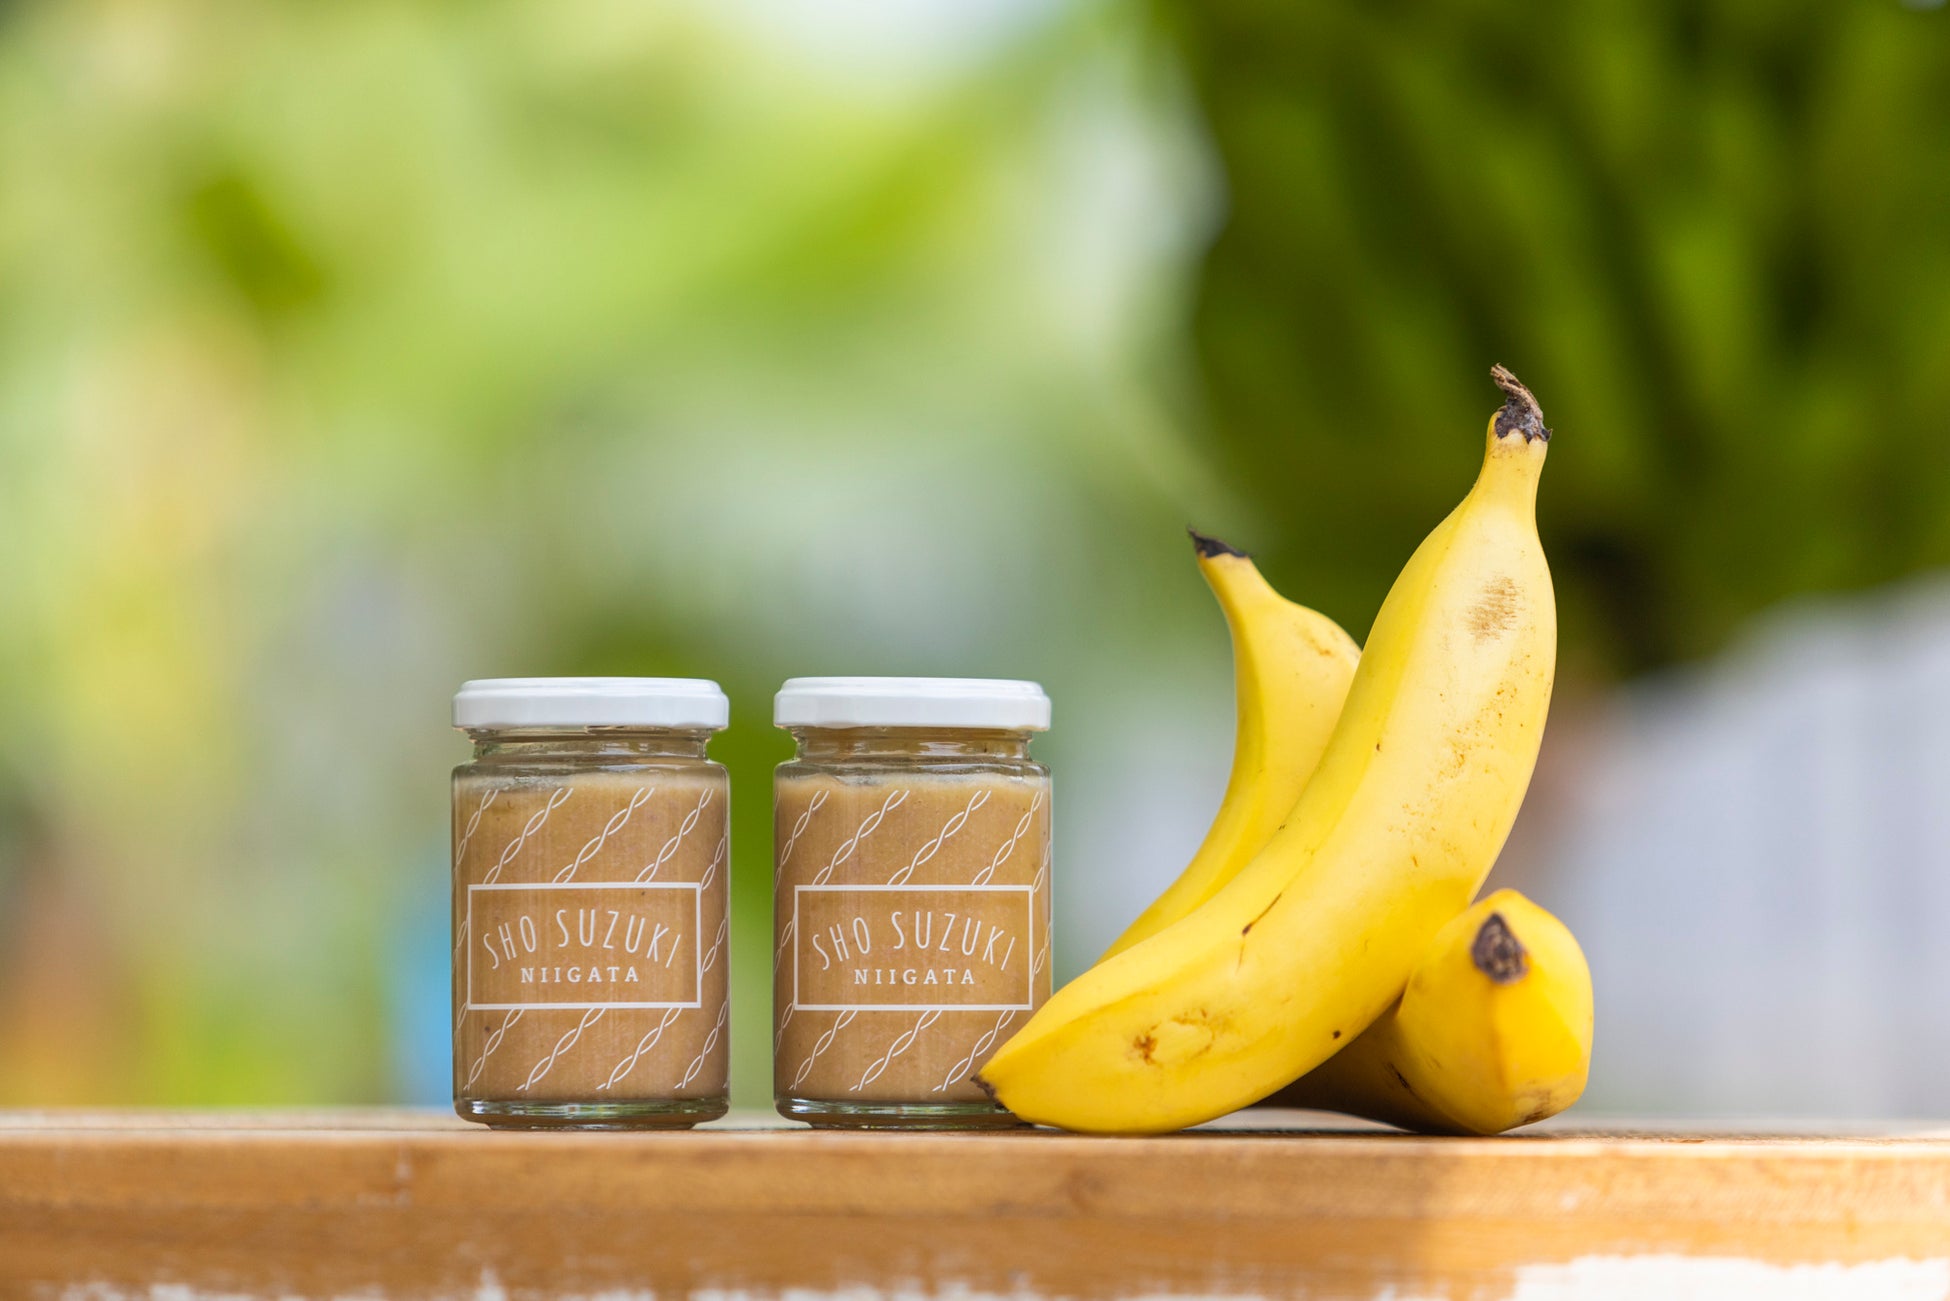 新潟県柏崎市生まれのプレミアムバナナで作る、環境に配慮したサスティナブルなフルーツソース「SHO SUZUKI NIIGATA 雪国完熟バナナミルクの素」